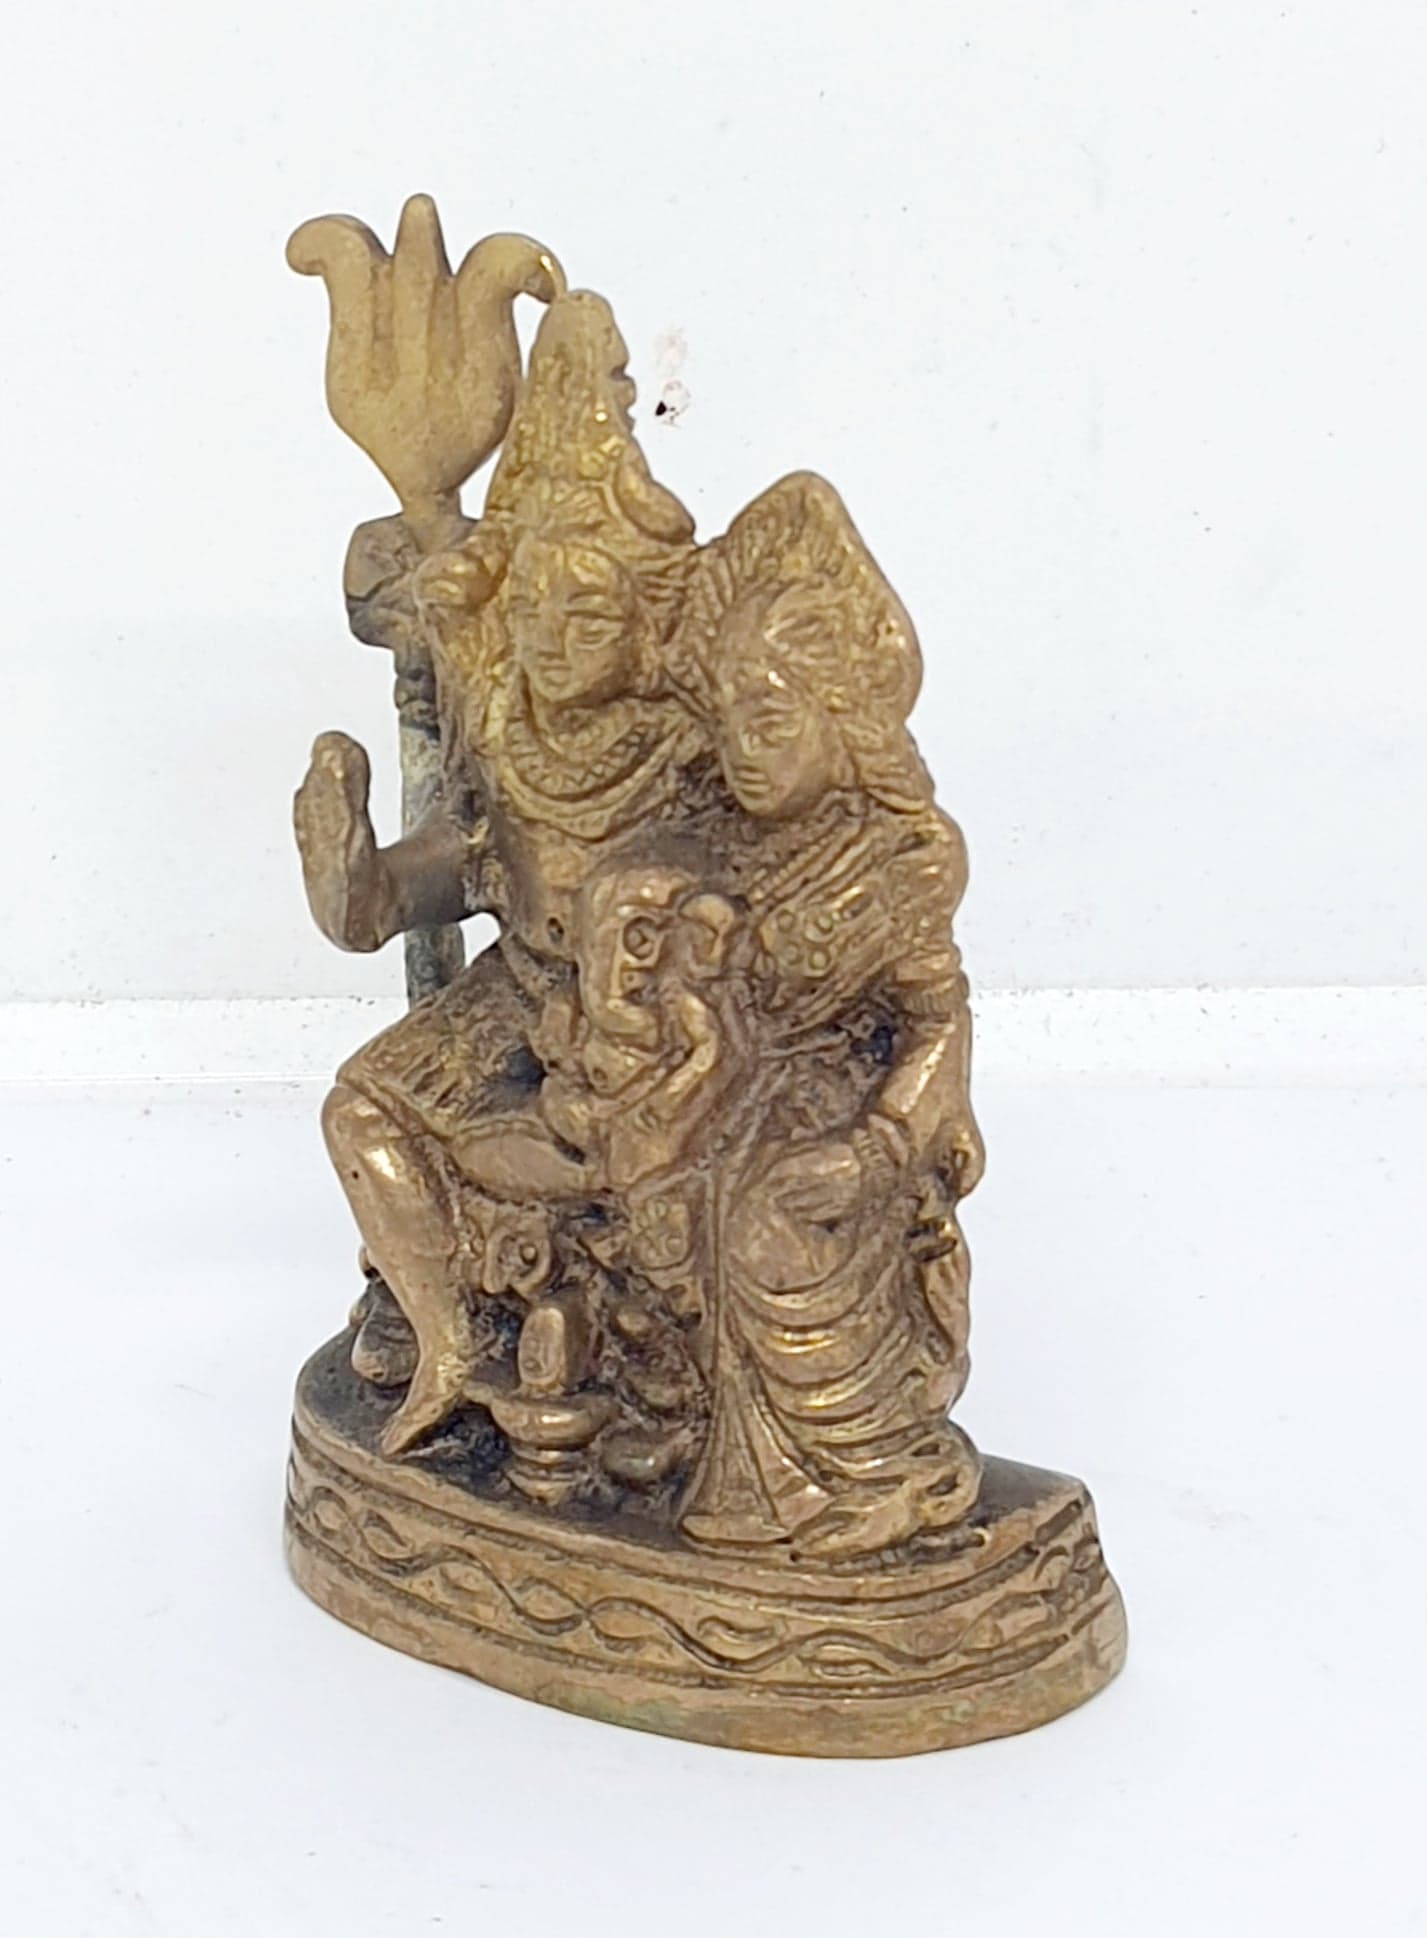 รูปภาพที่1 ของสินค้า : TP064 พระศิวะปางครอบครัว เนื้อทองเหลืองอินเดีย 